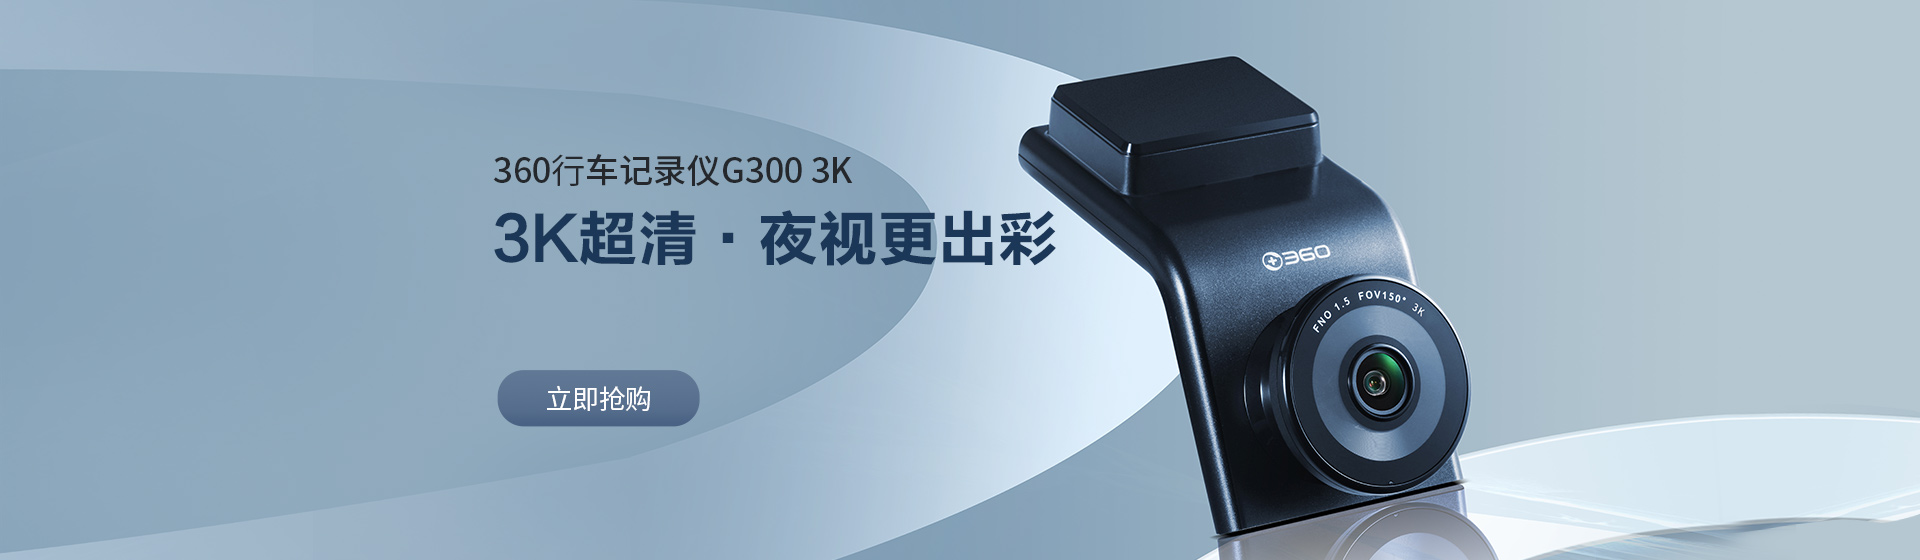 360行(xing)車(che)記錄儀(yi)G300 3K